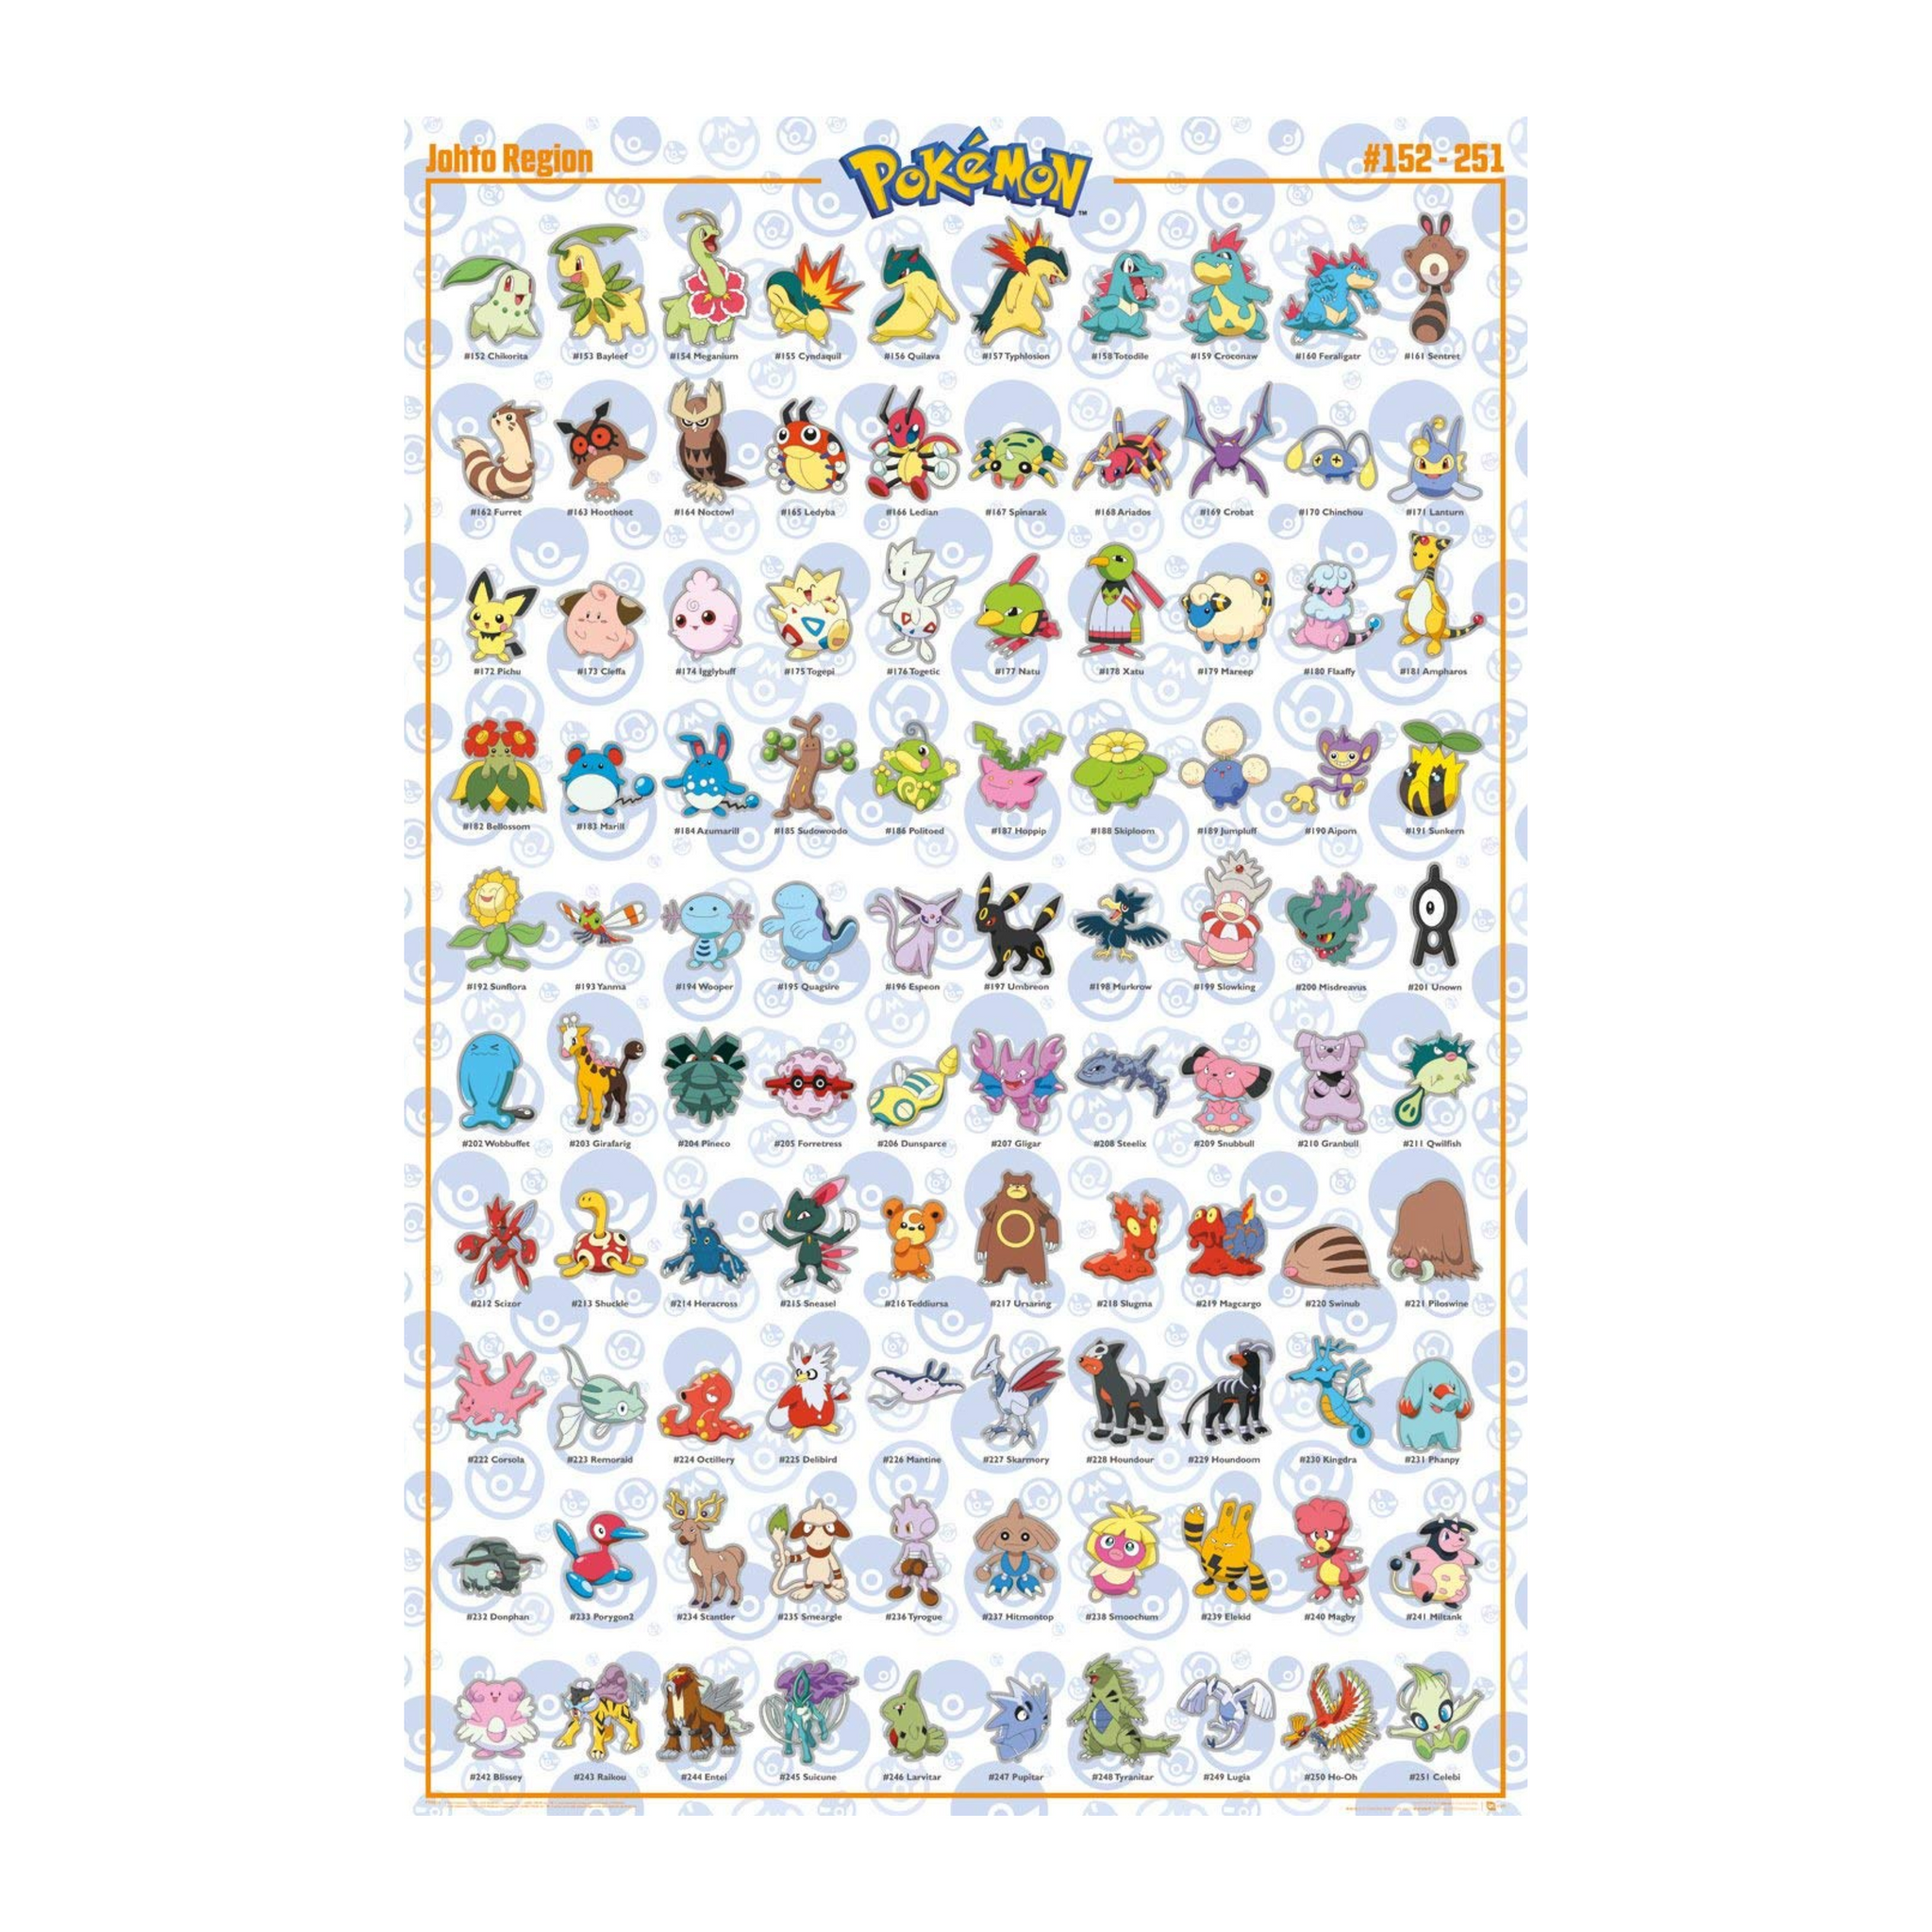 Pokémon | Johto Region | Maxi Poster